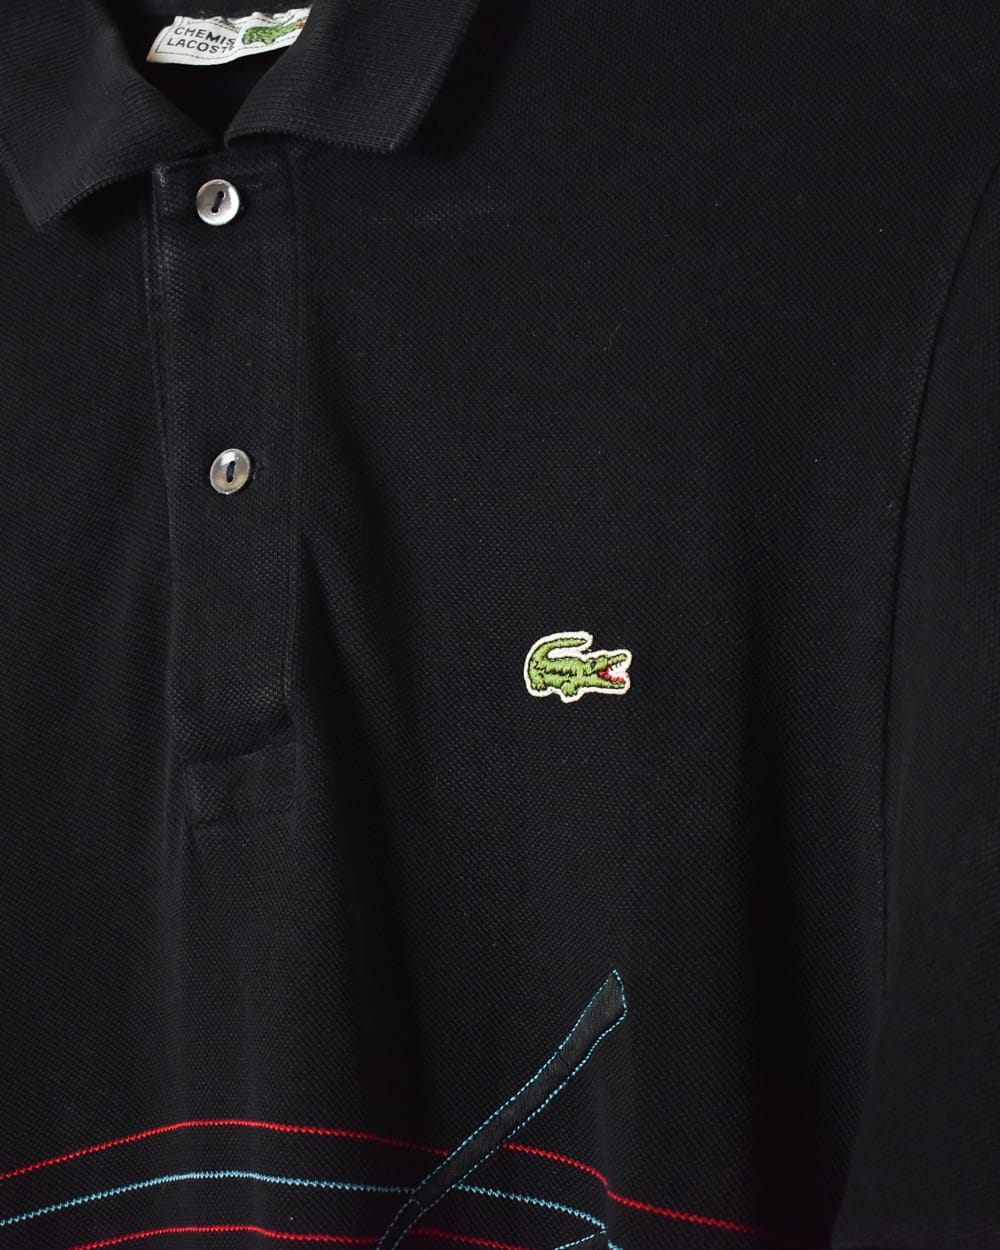 Black Chemise Lacoste Golf Polo Shirt - Large